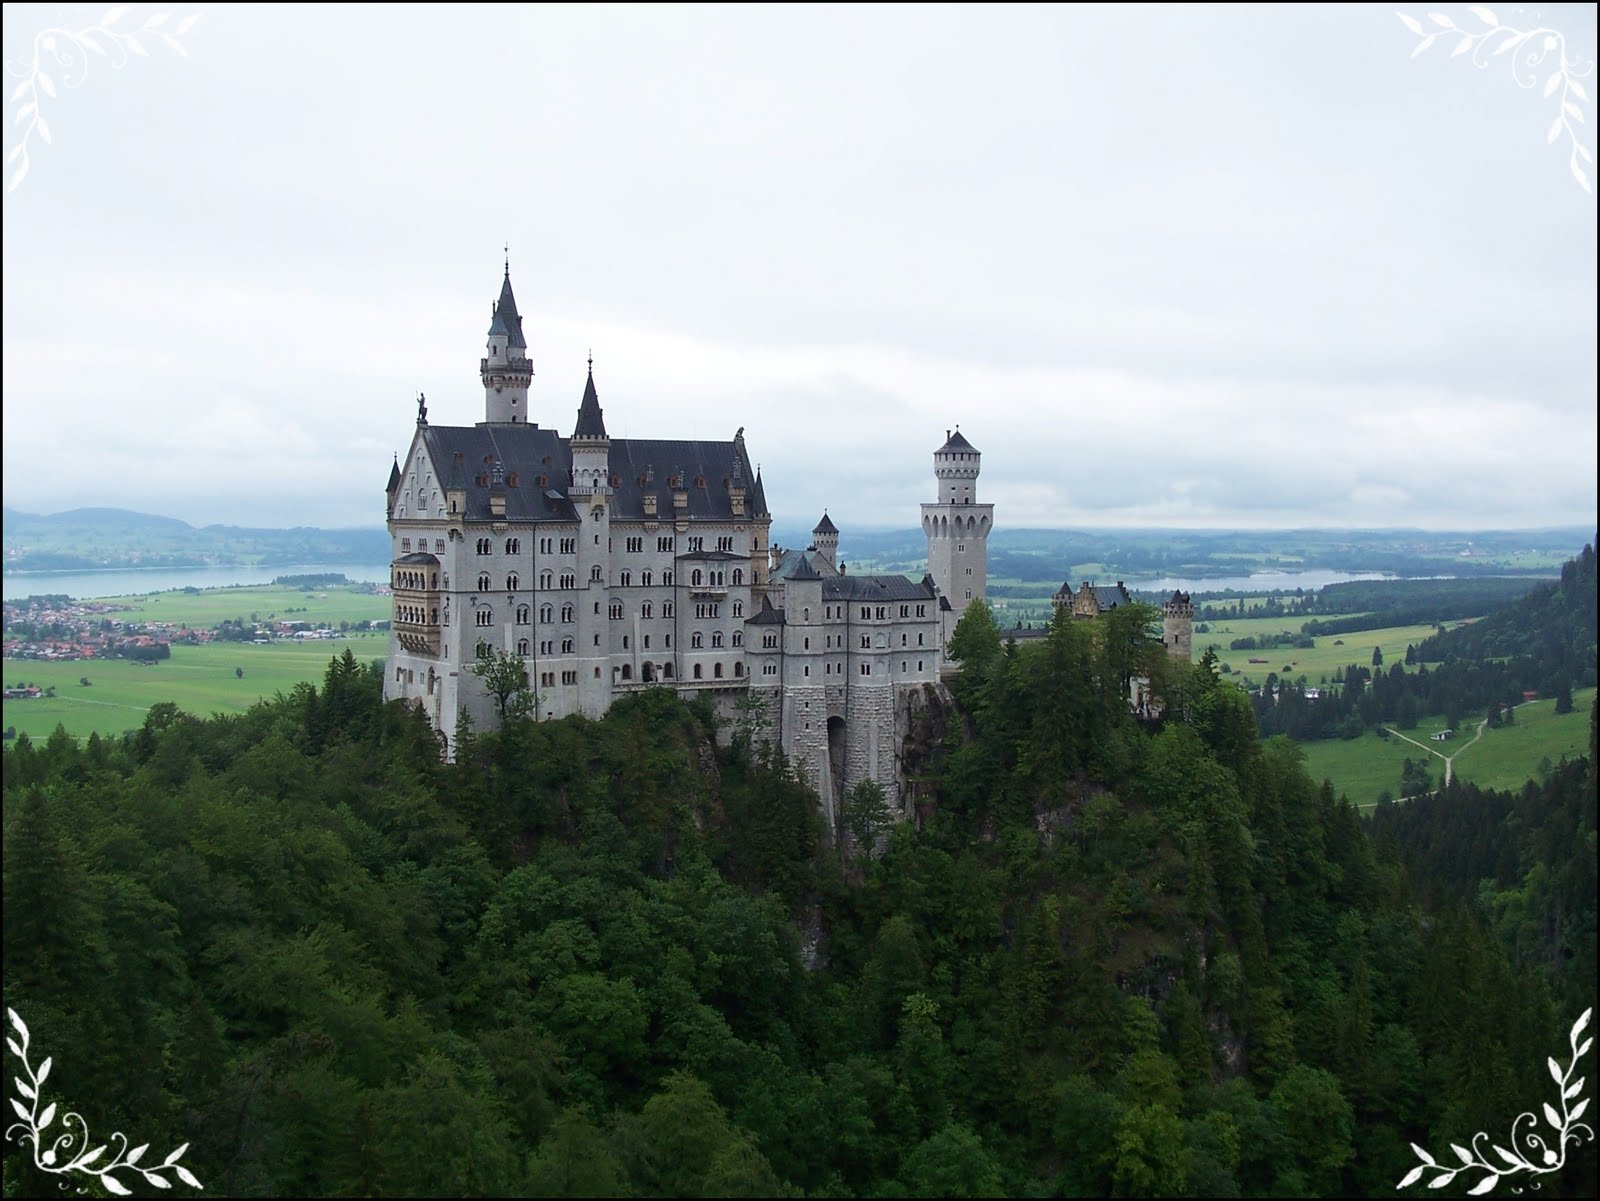 Backpacker Girls: Schloss Neuschwanstein-Most Romantic Castle